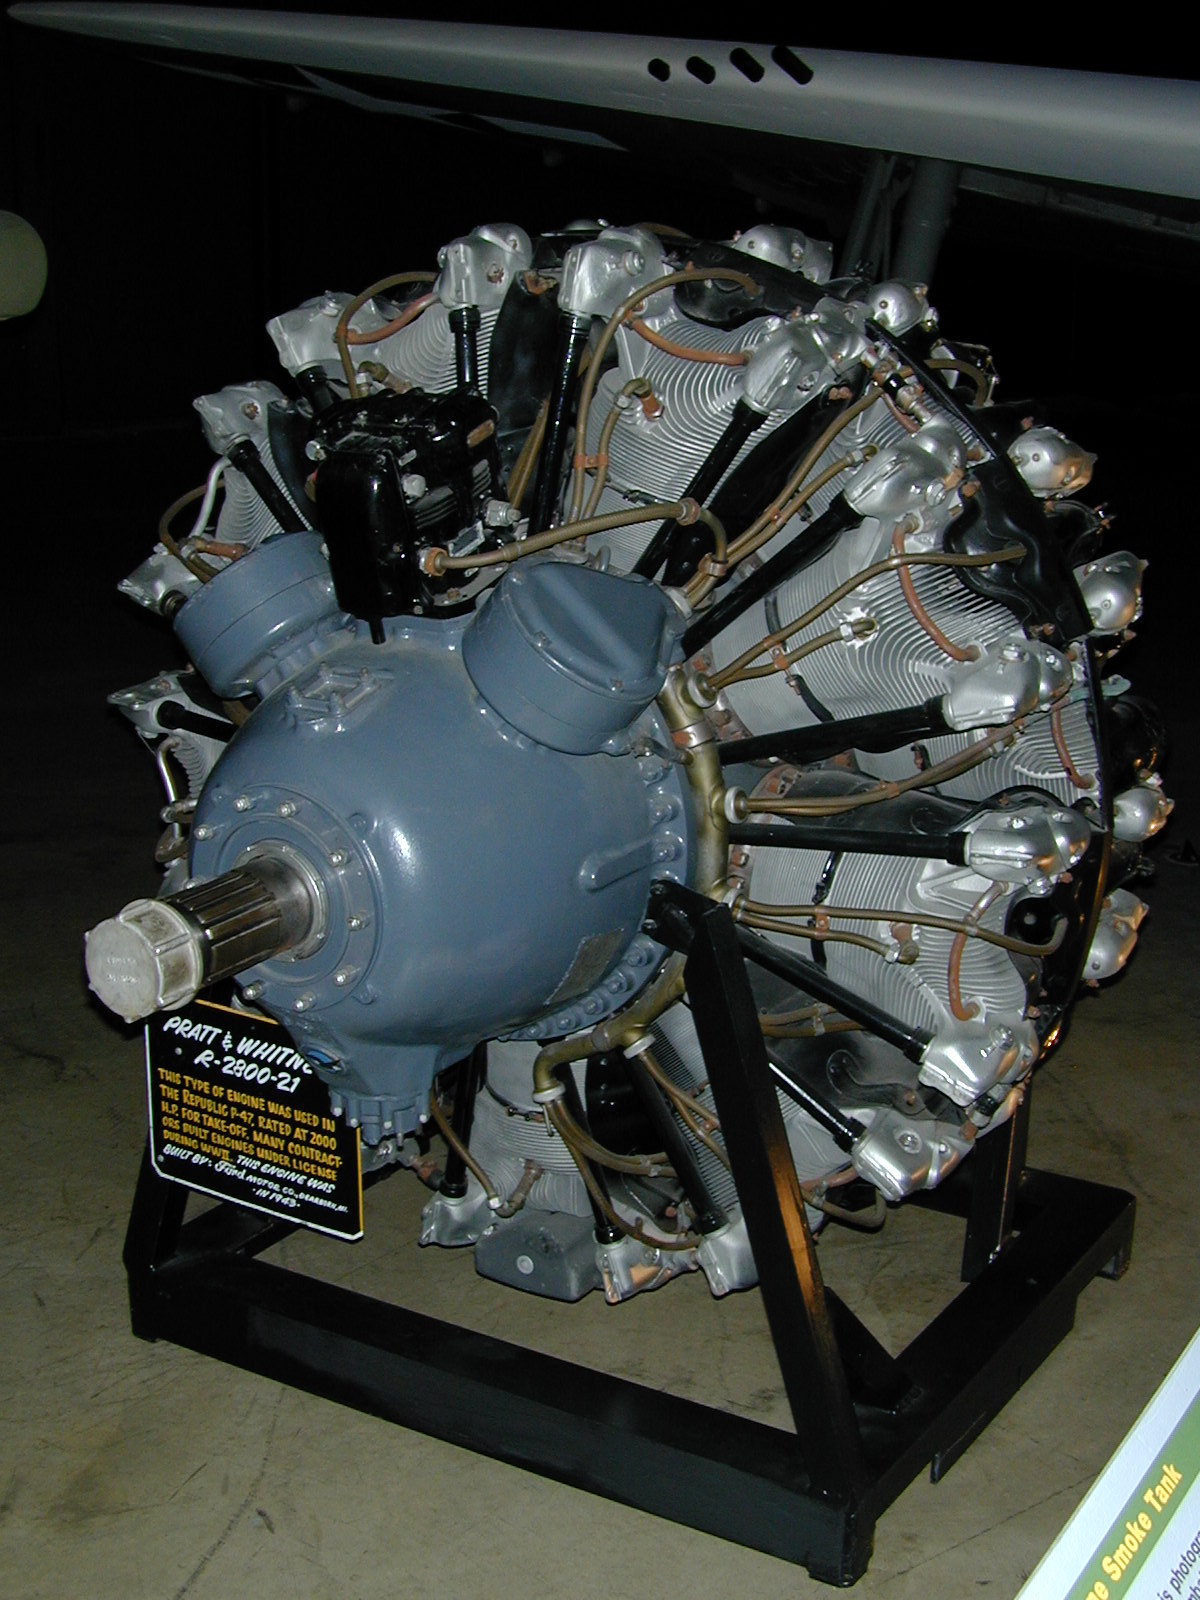 Pratt & Whitney R-2800 Double Wasp - Wikipedia